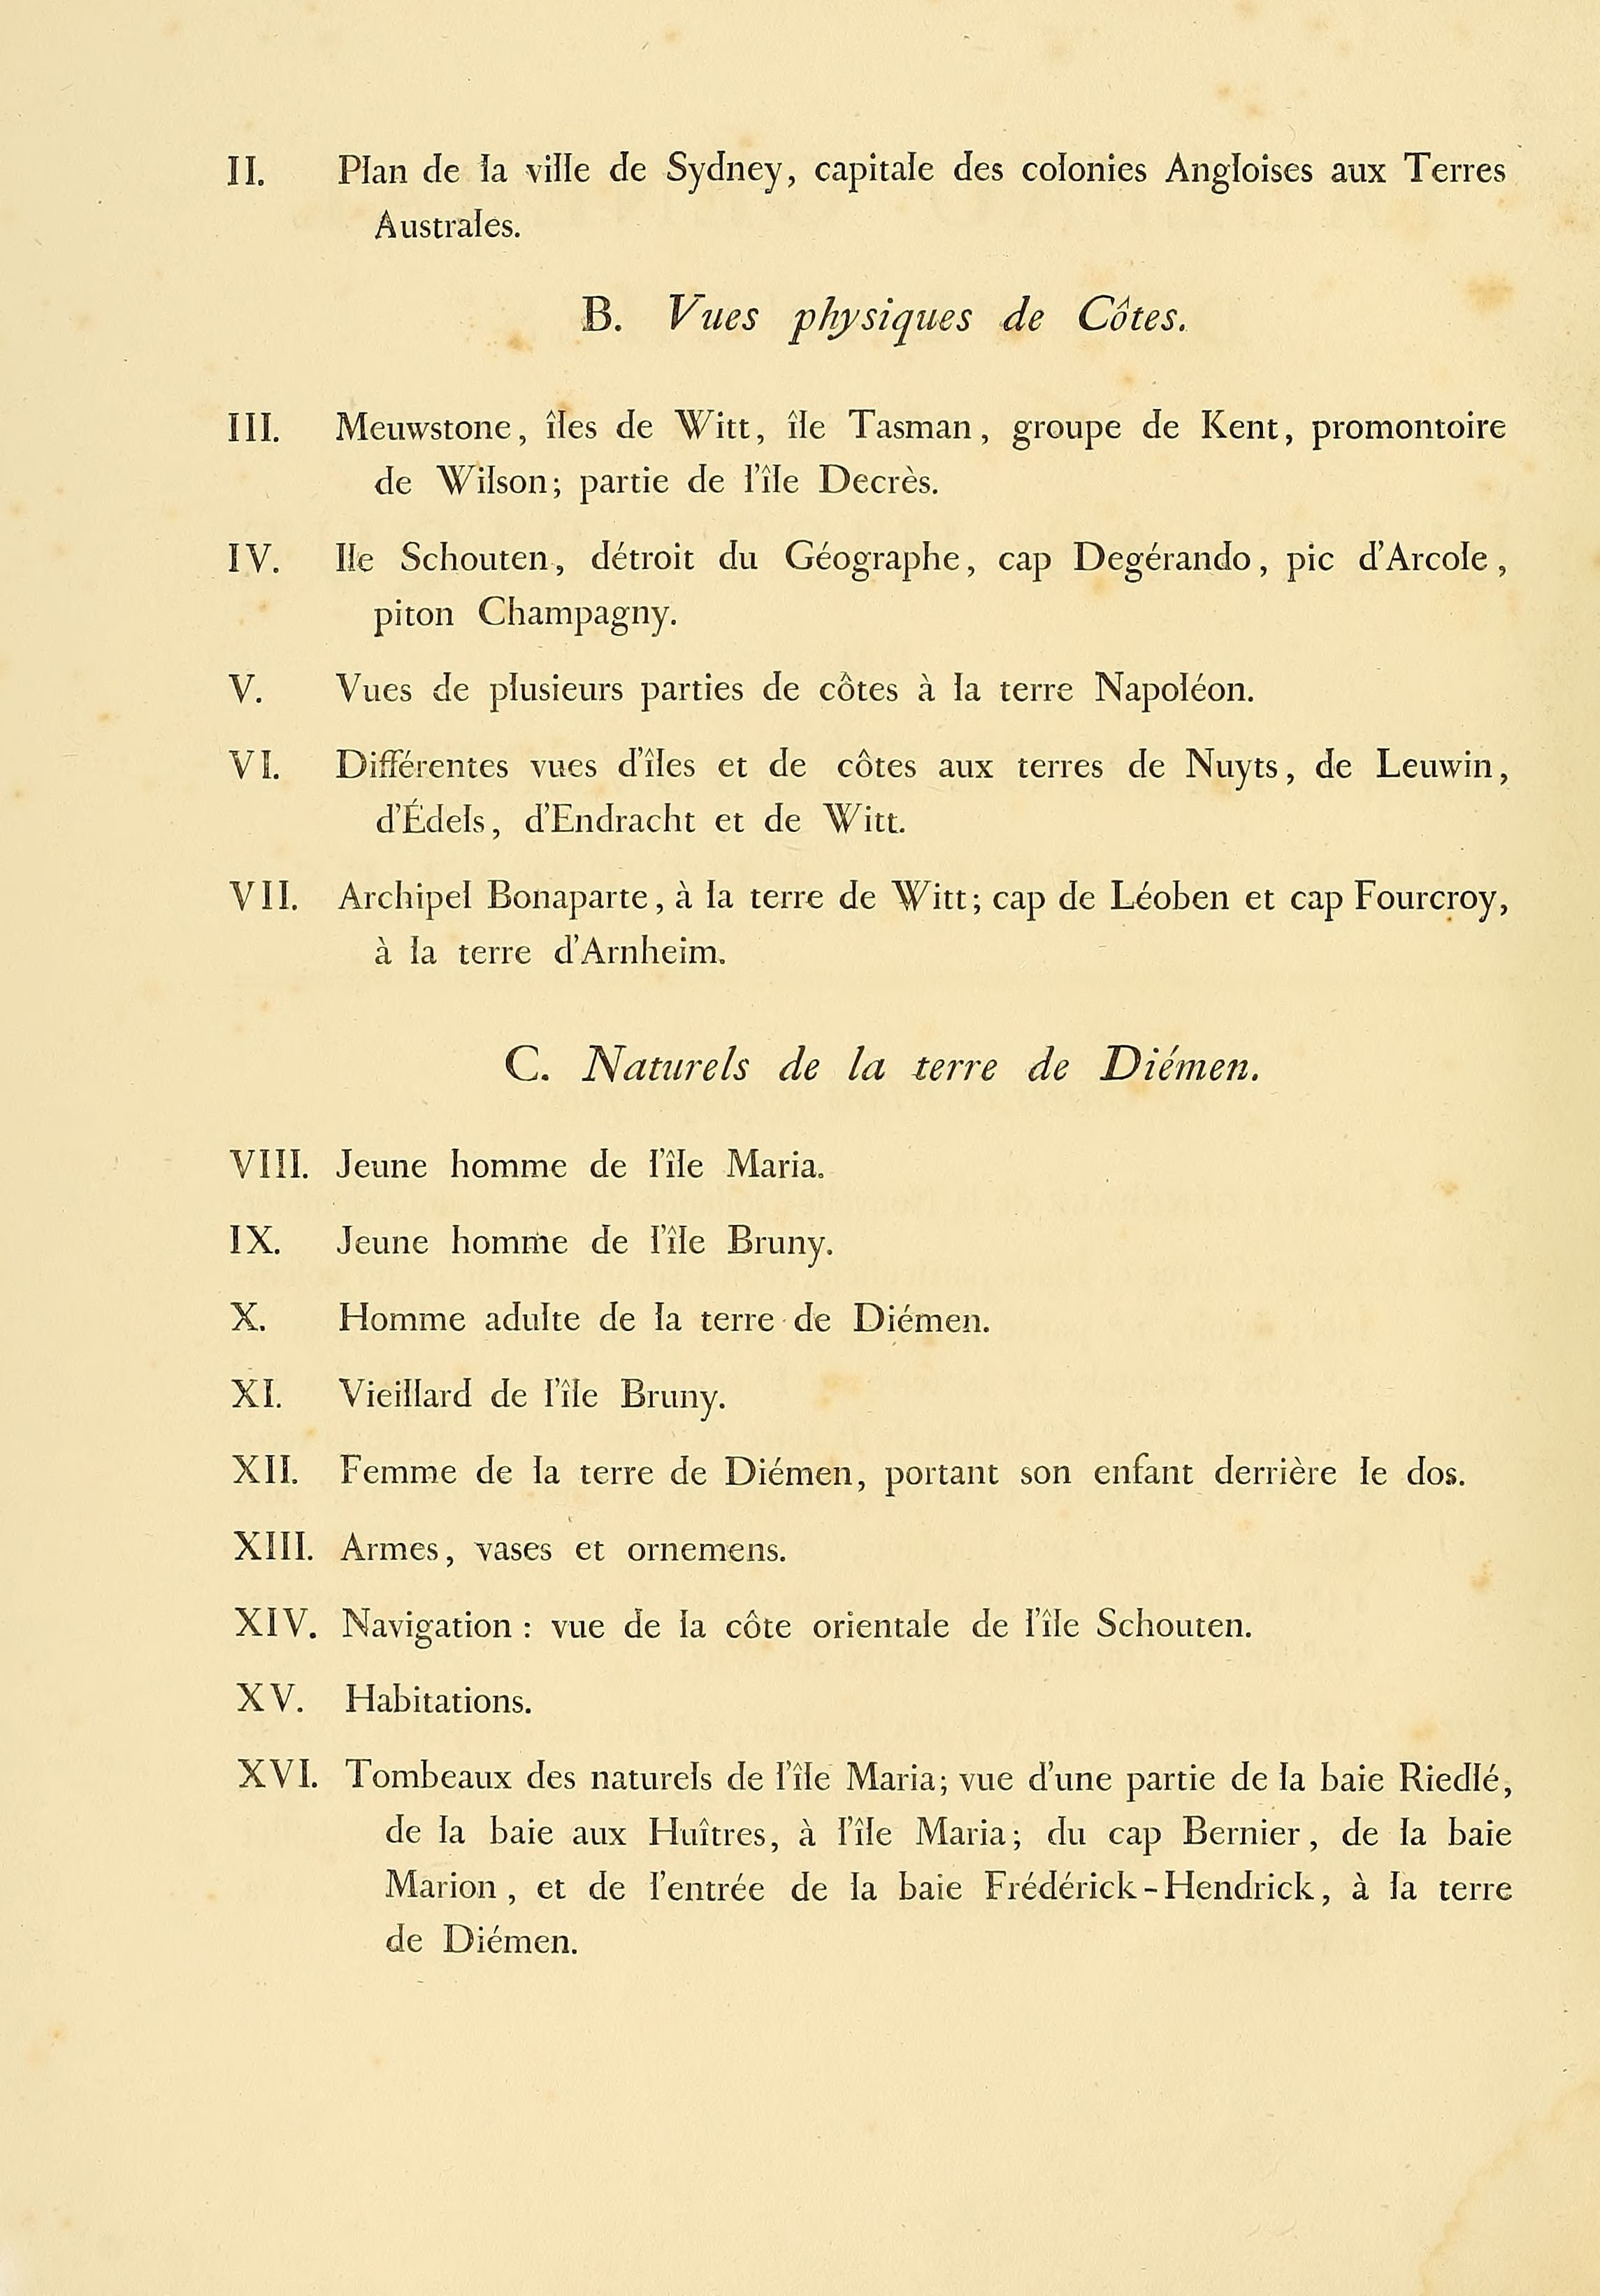 Atlas 1807, Lesueur et Petit, Voyage aux Terres Australes, index 2